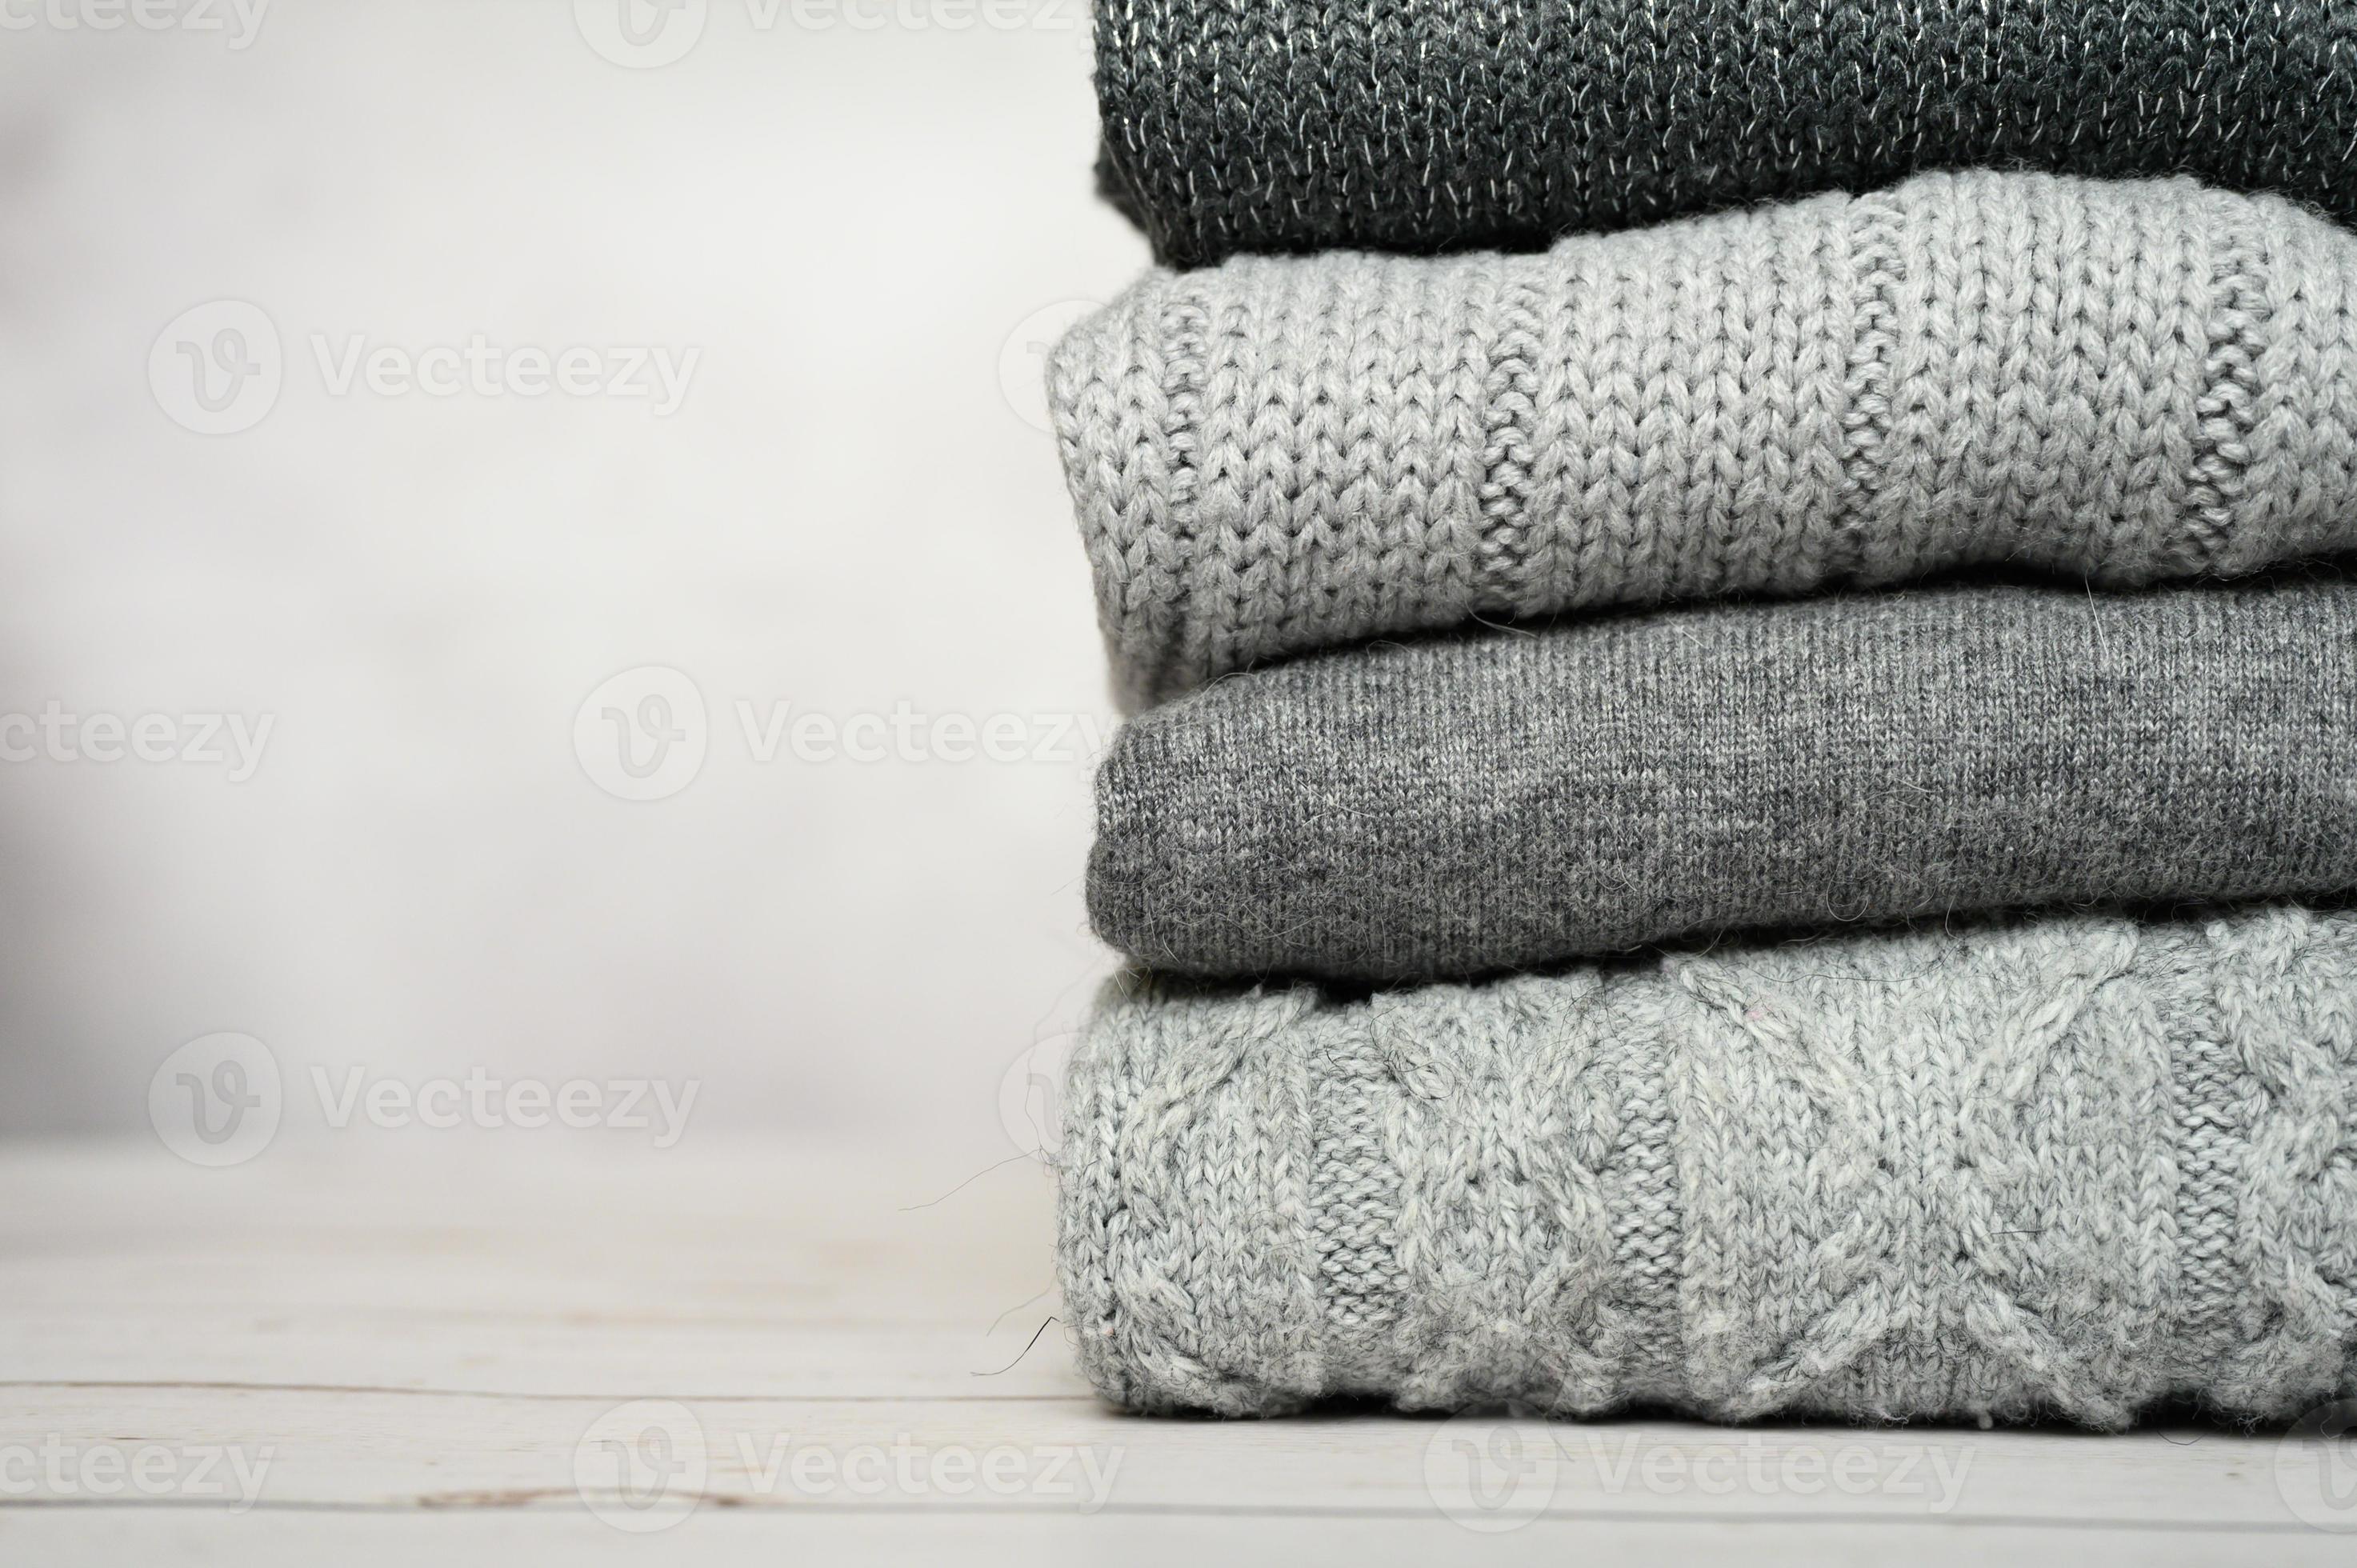 maglione di lana grau accogliente autunno caldo foto